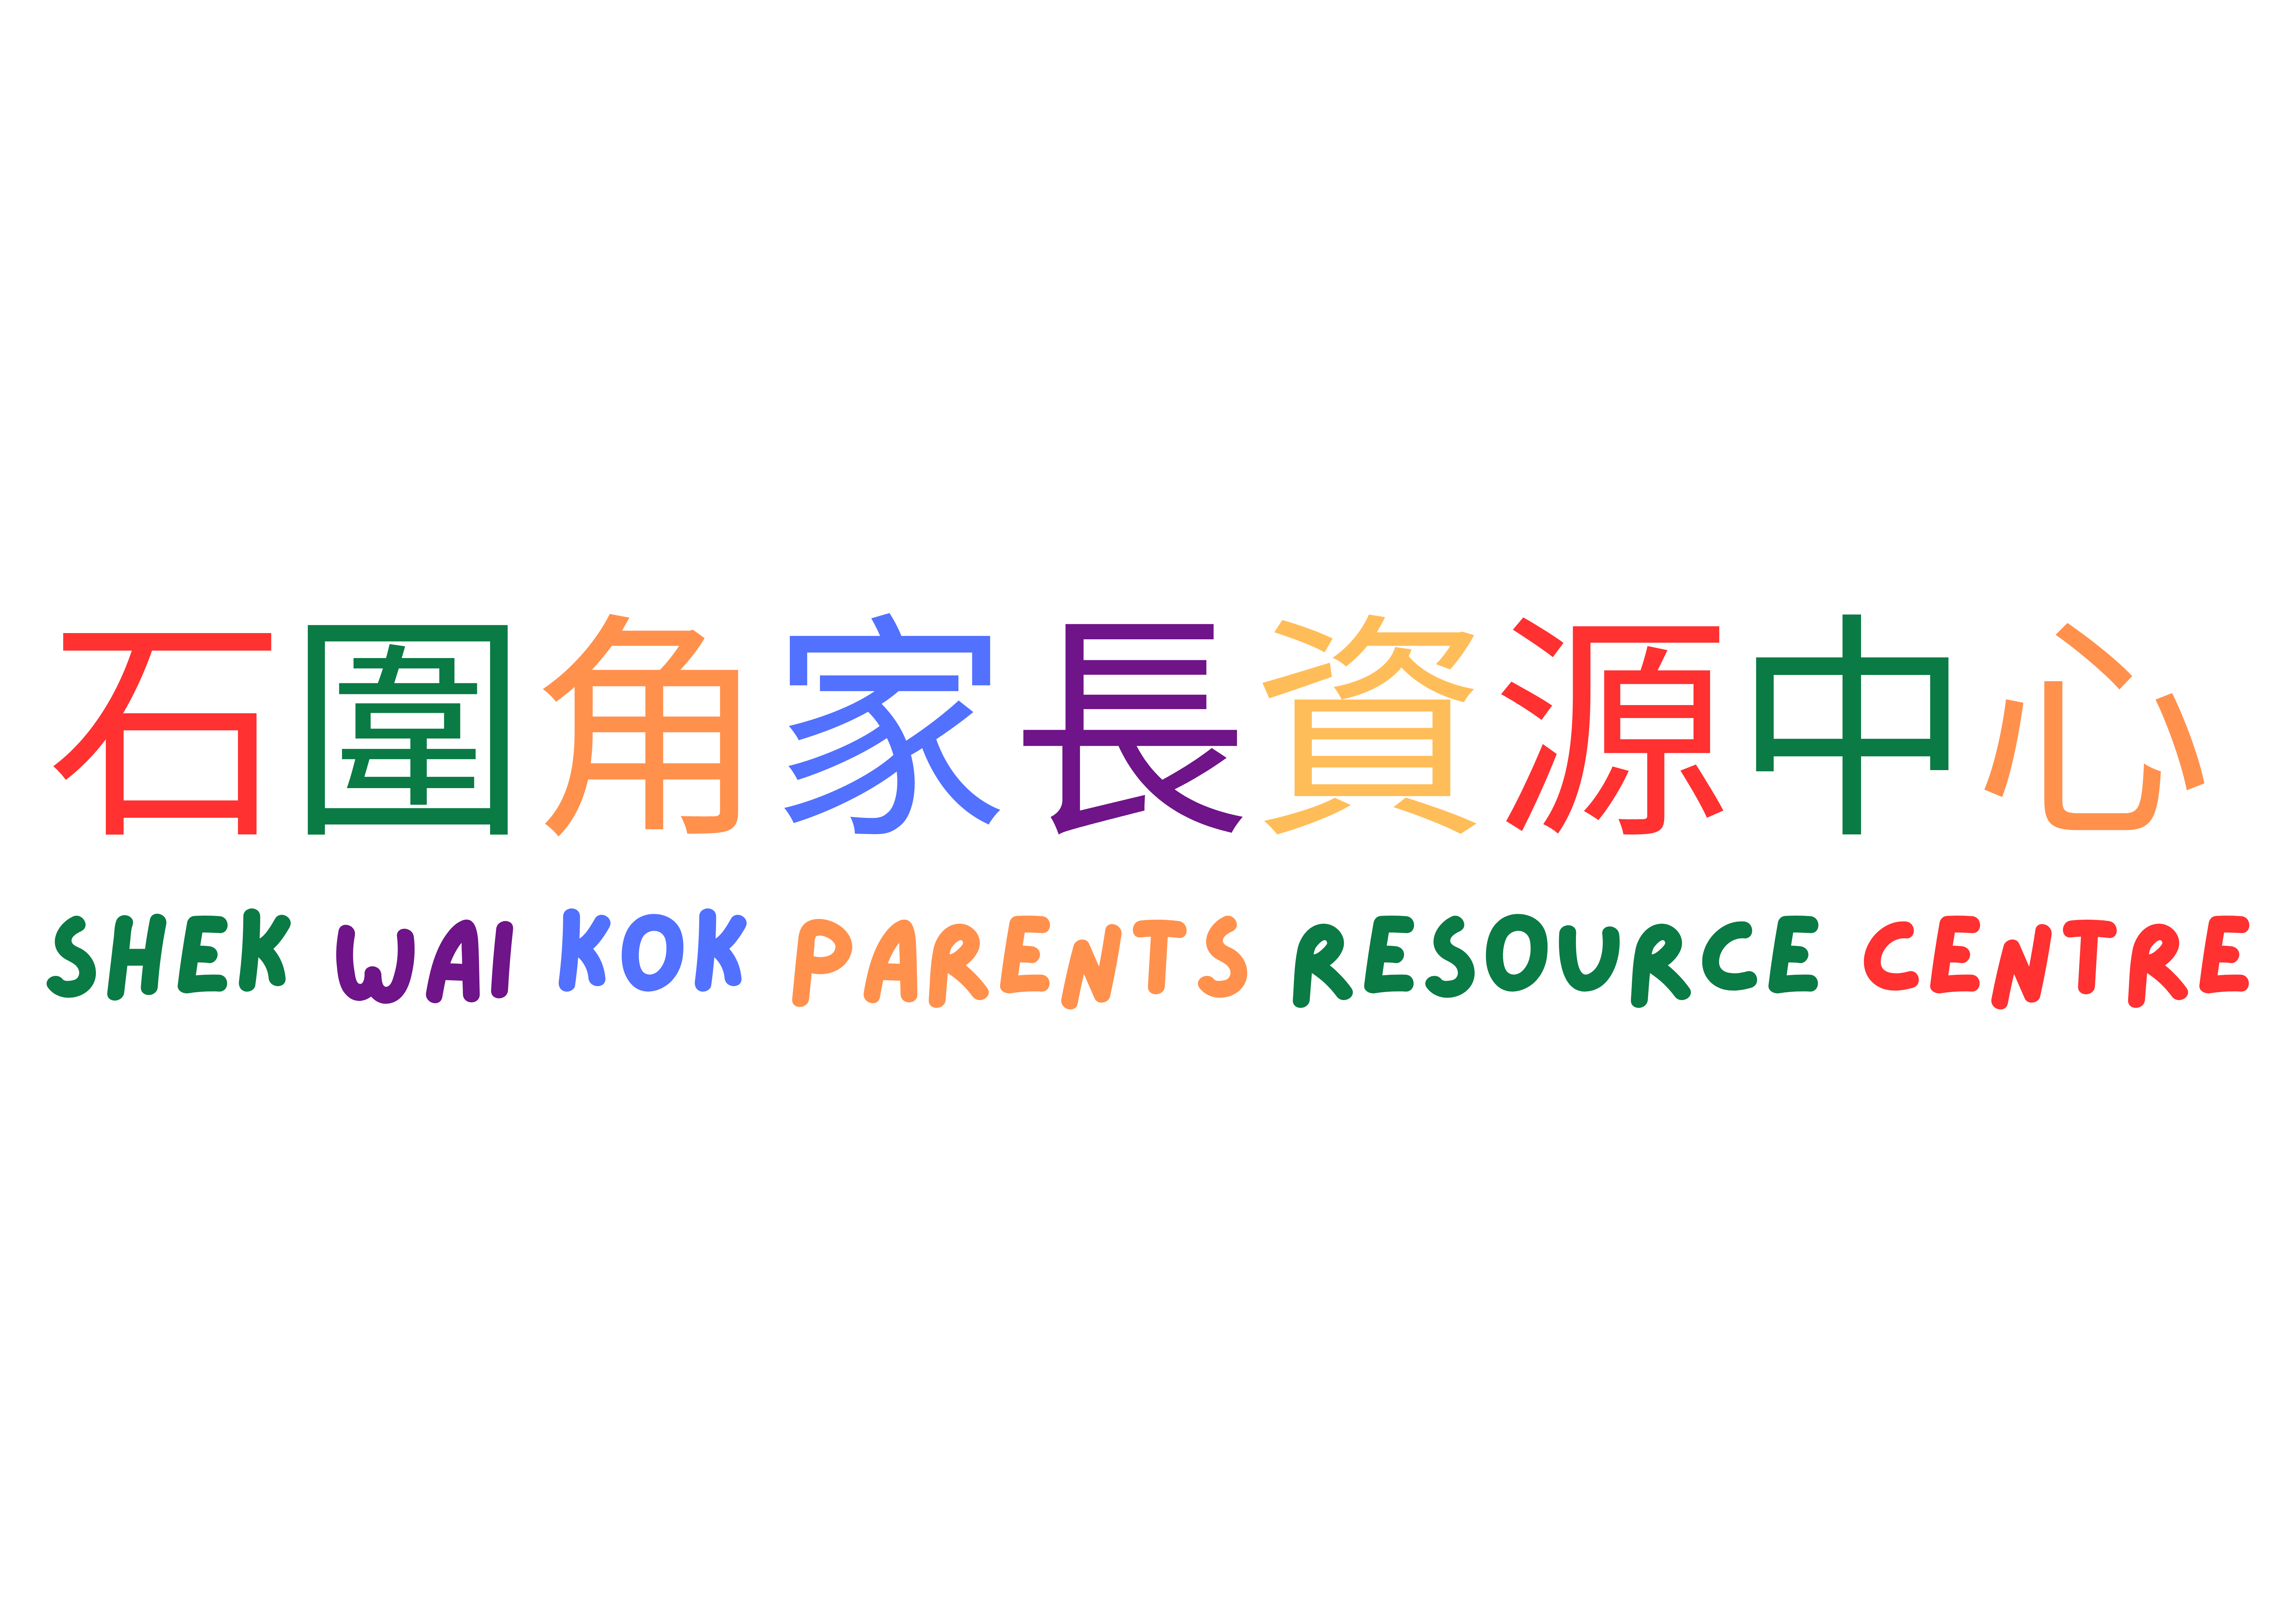 SAHK Shek Wai Kok Parents Resource Centre